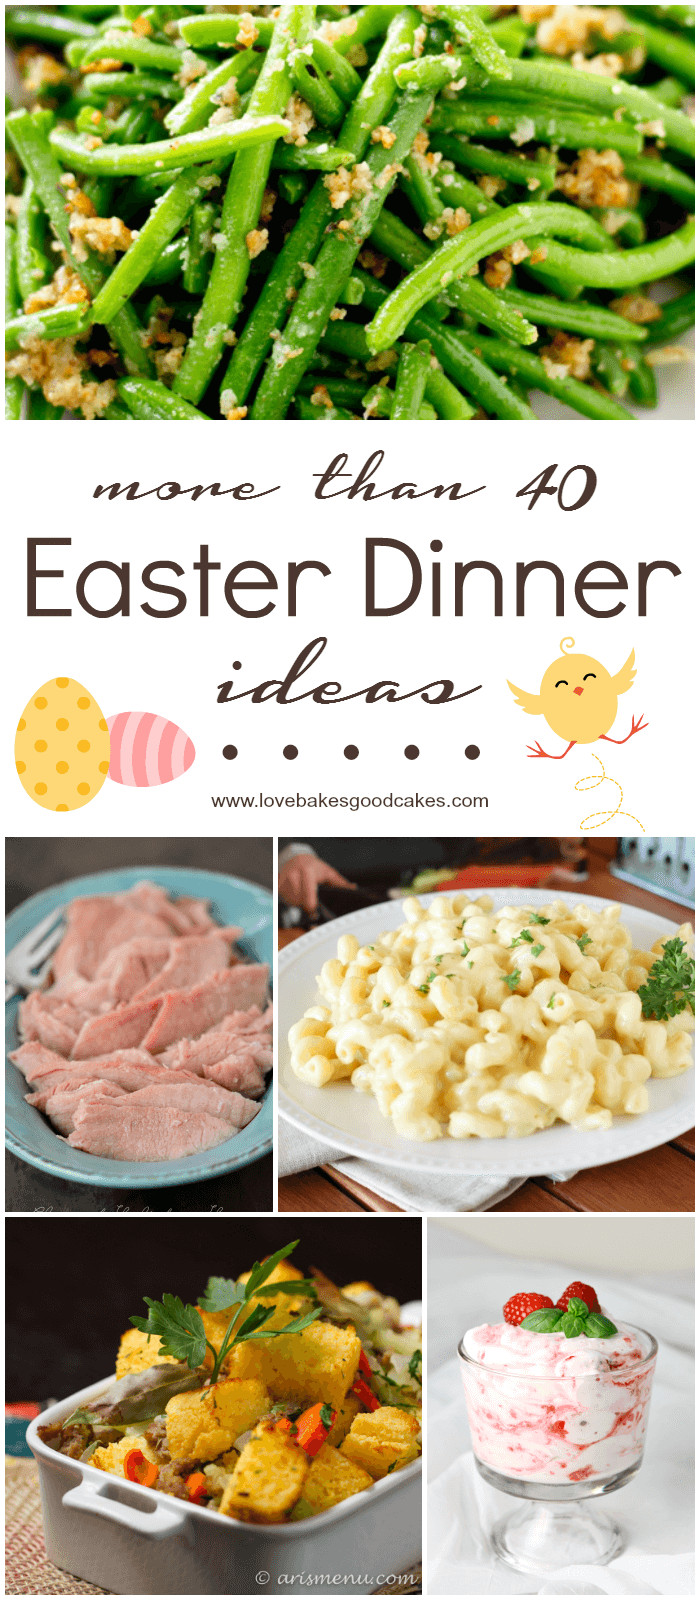 Easter Dinner For One
 More than 40 Easter Dinner Ideas